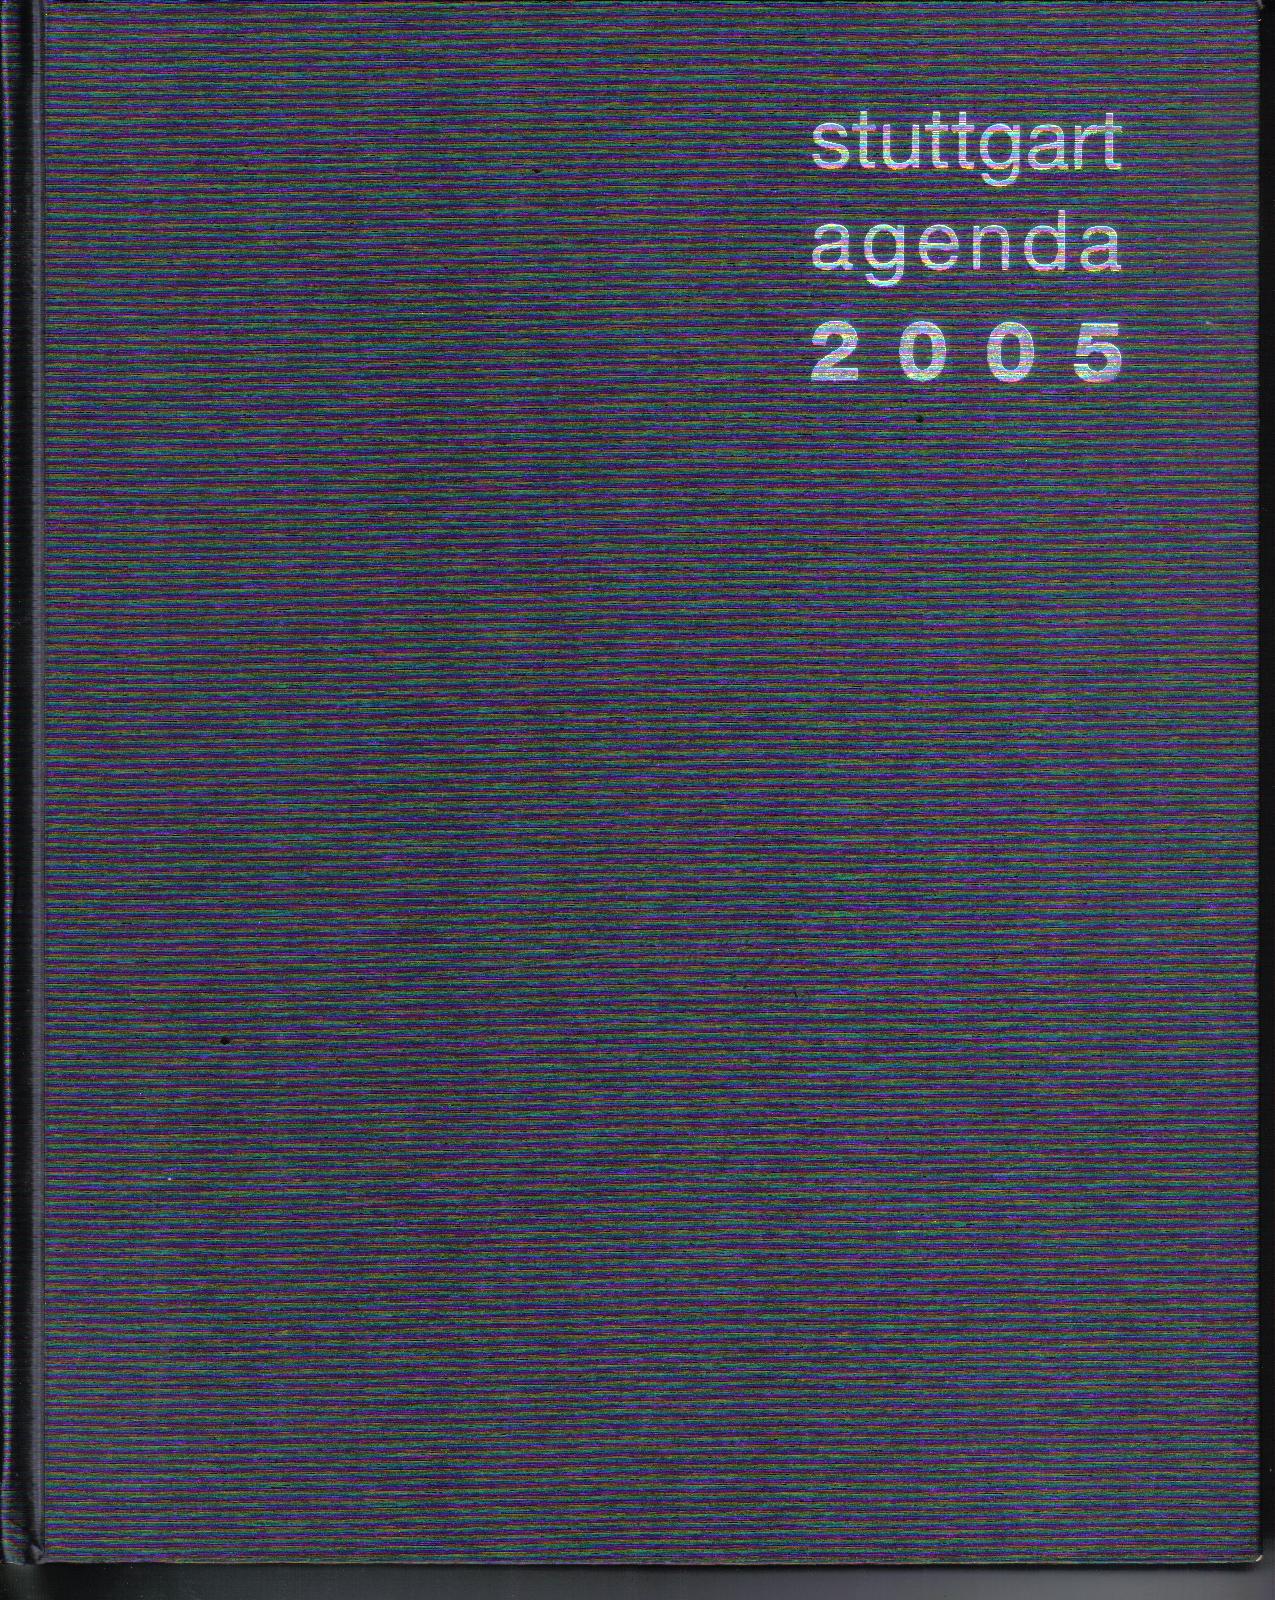 Stuttgart agenda 2005